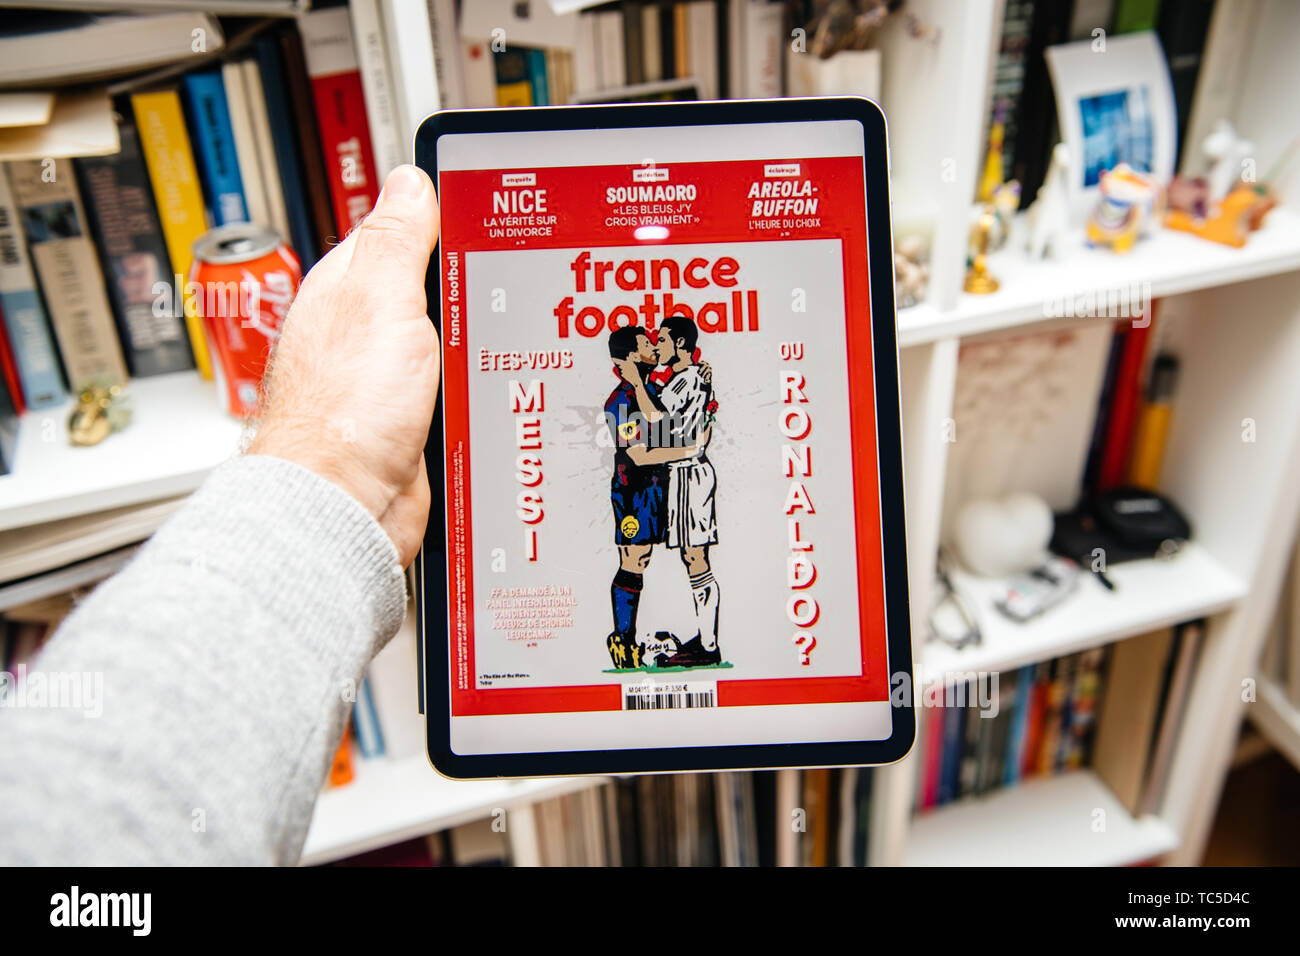 Paris, France - Apr 15, 2019 : lecture sur iPad Apple Pro News Plus d' journal numérique sur la couverture de France Football Messi et Ronaldo personnages de baisers Banque D'Images